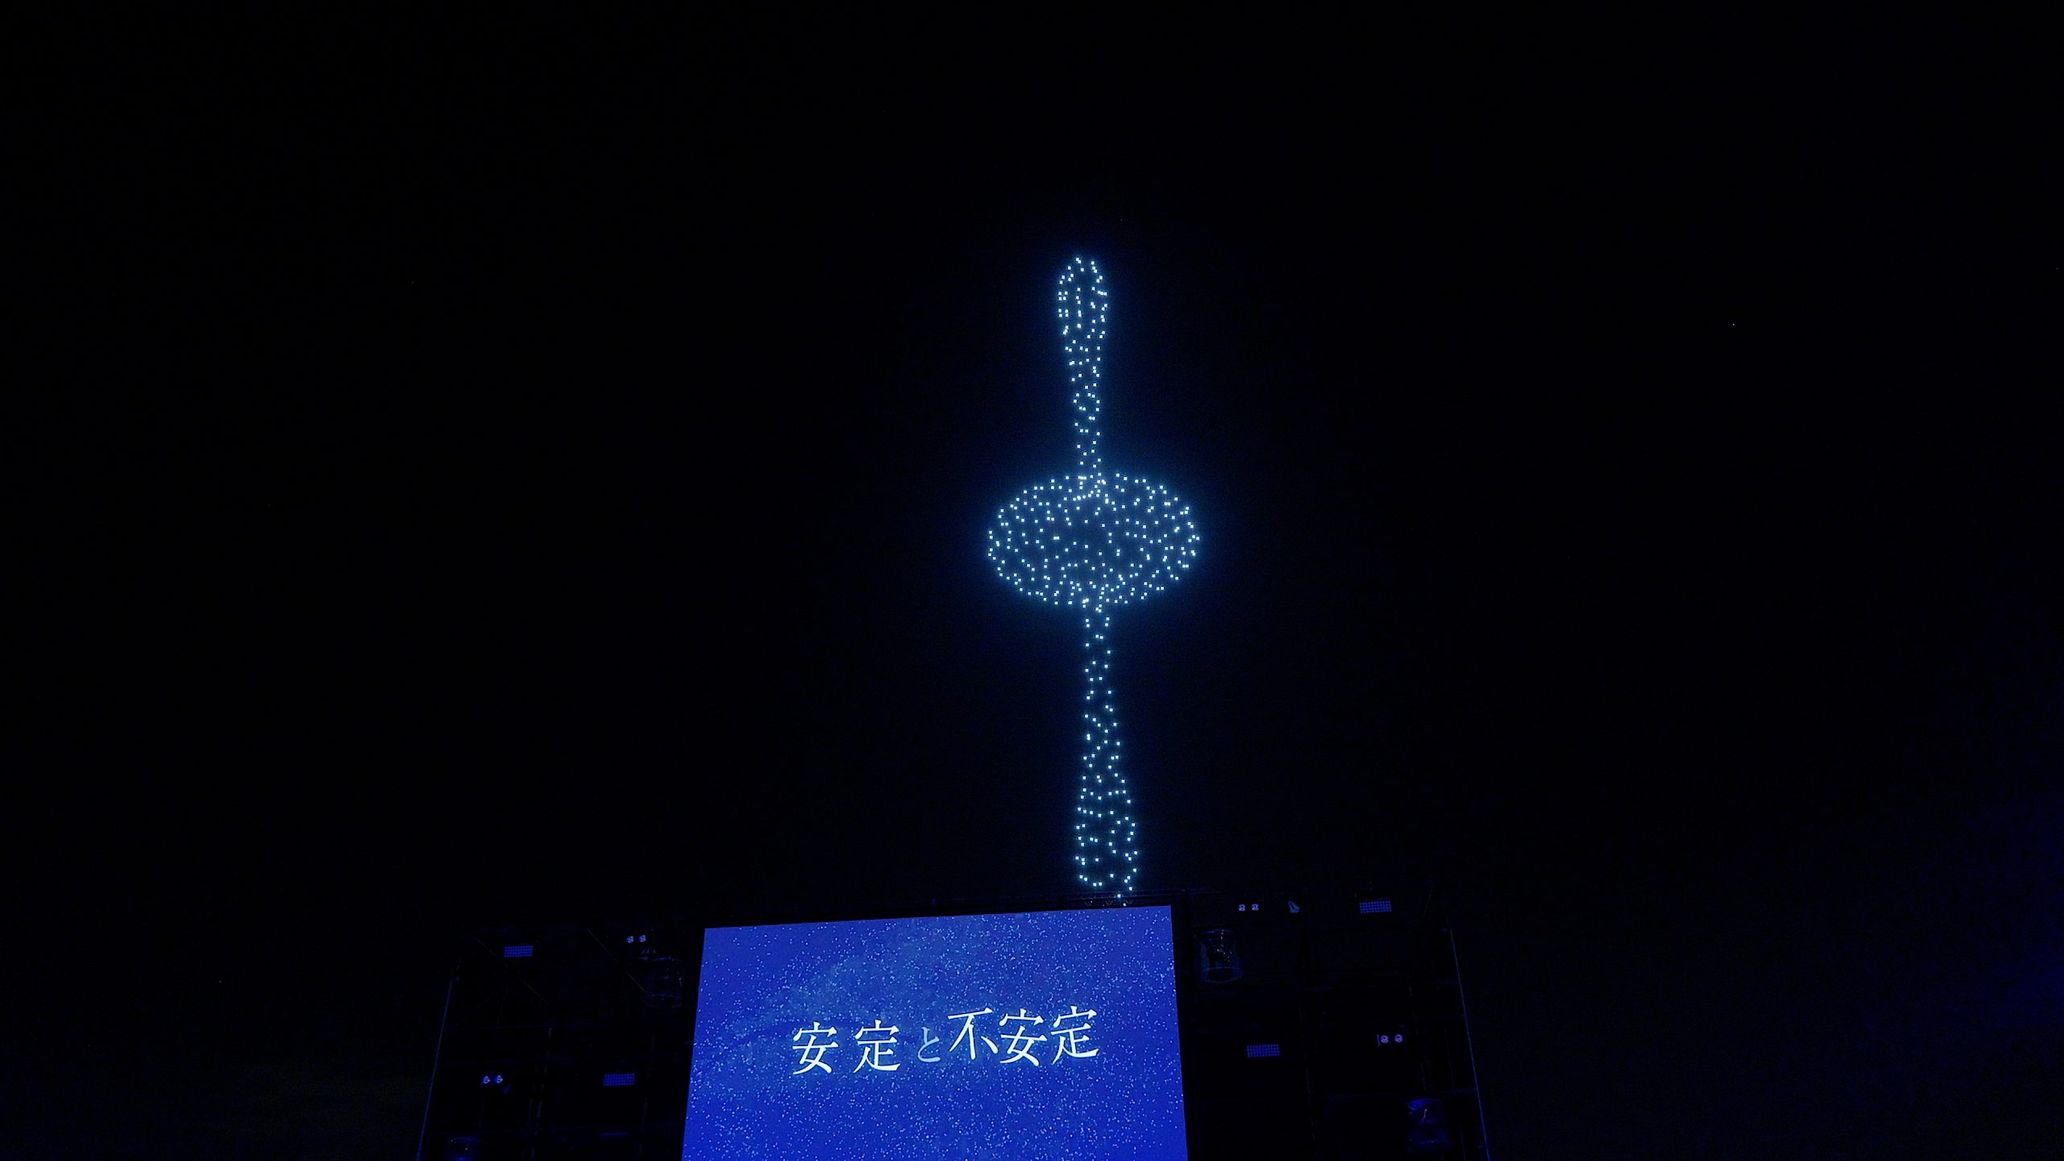 9月30日に行われたButterfly Studioによる「en Live Art Performance」より。名和晃平の彫刻作品の形をドローンで空中に再現した